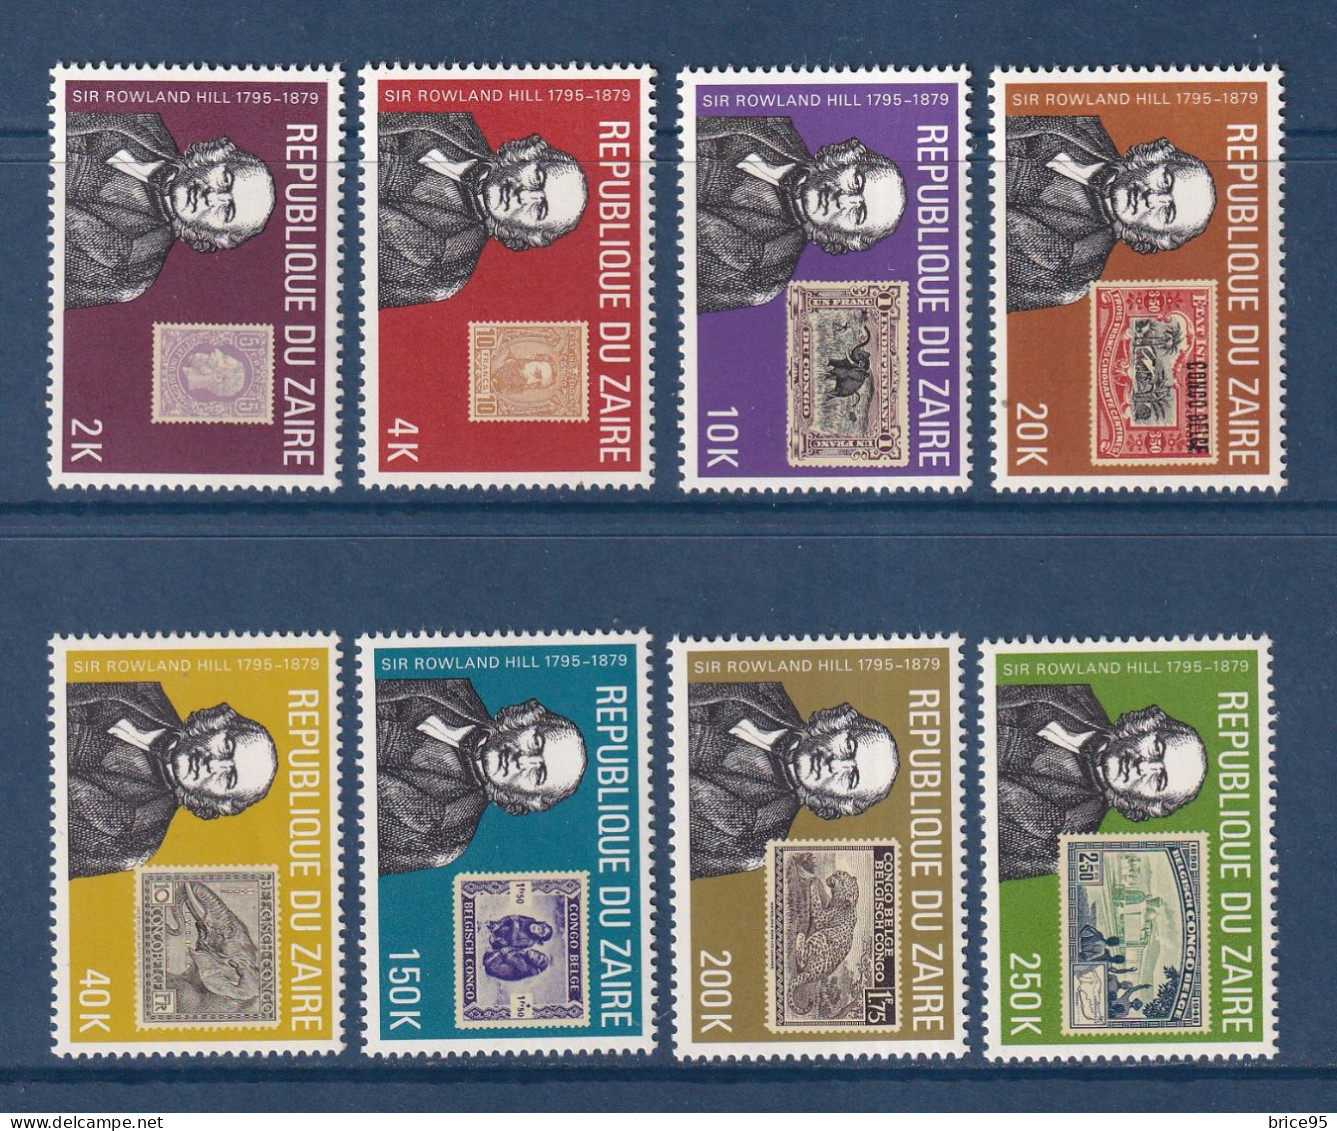 Zaïre - YT N° 970 à 977 ** - Neuf Sans Charnière - 1980 - Unused Stamps